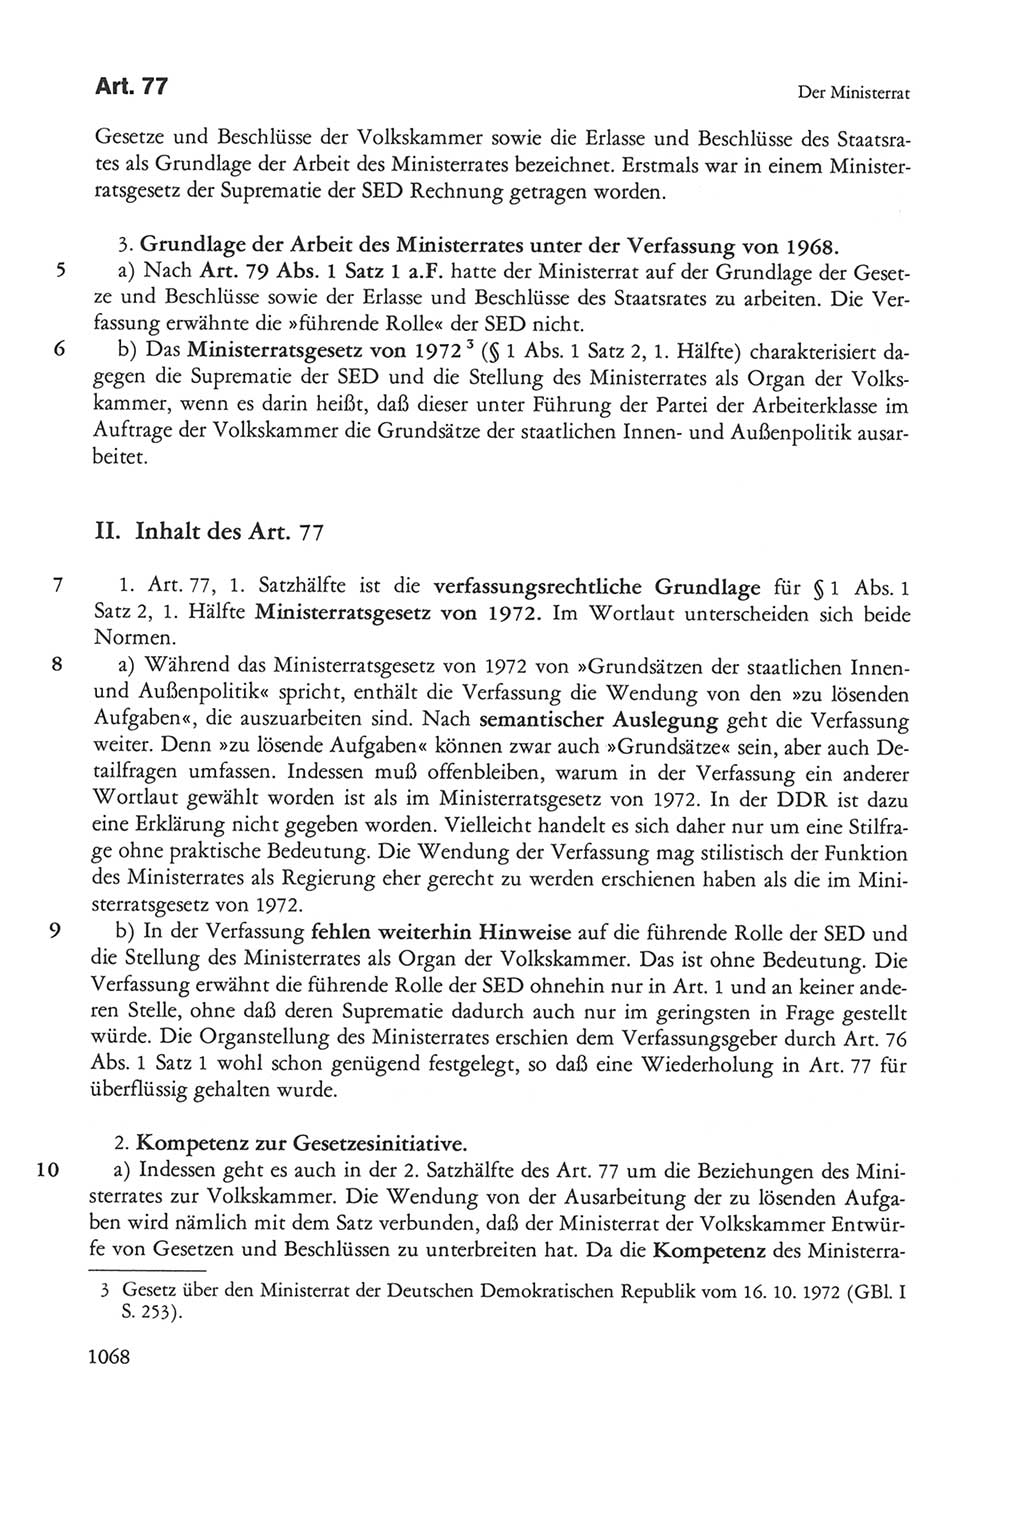 Die sozialistische Verfassung der Deutschen Demokratischen Republik (DDR), Kommentar mit einem Nachtrag 1997, Seite 1068 (Soz. Verf. DDR Komm. Nachtr. 1997, S. 1068)